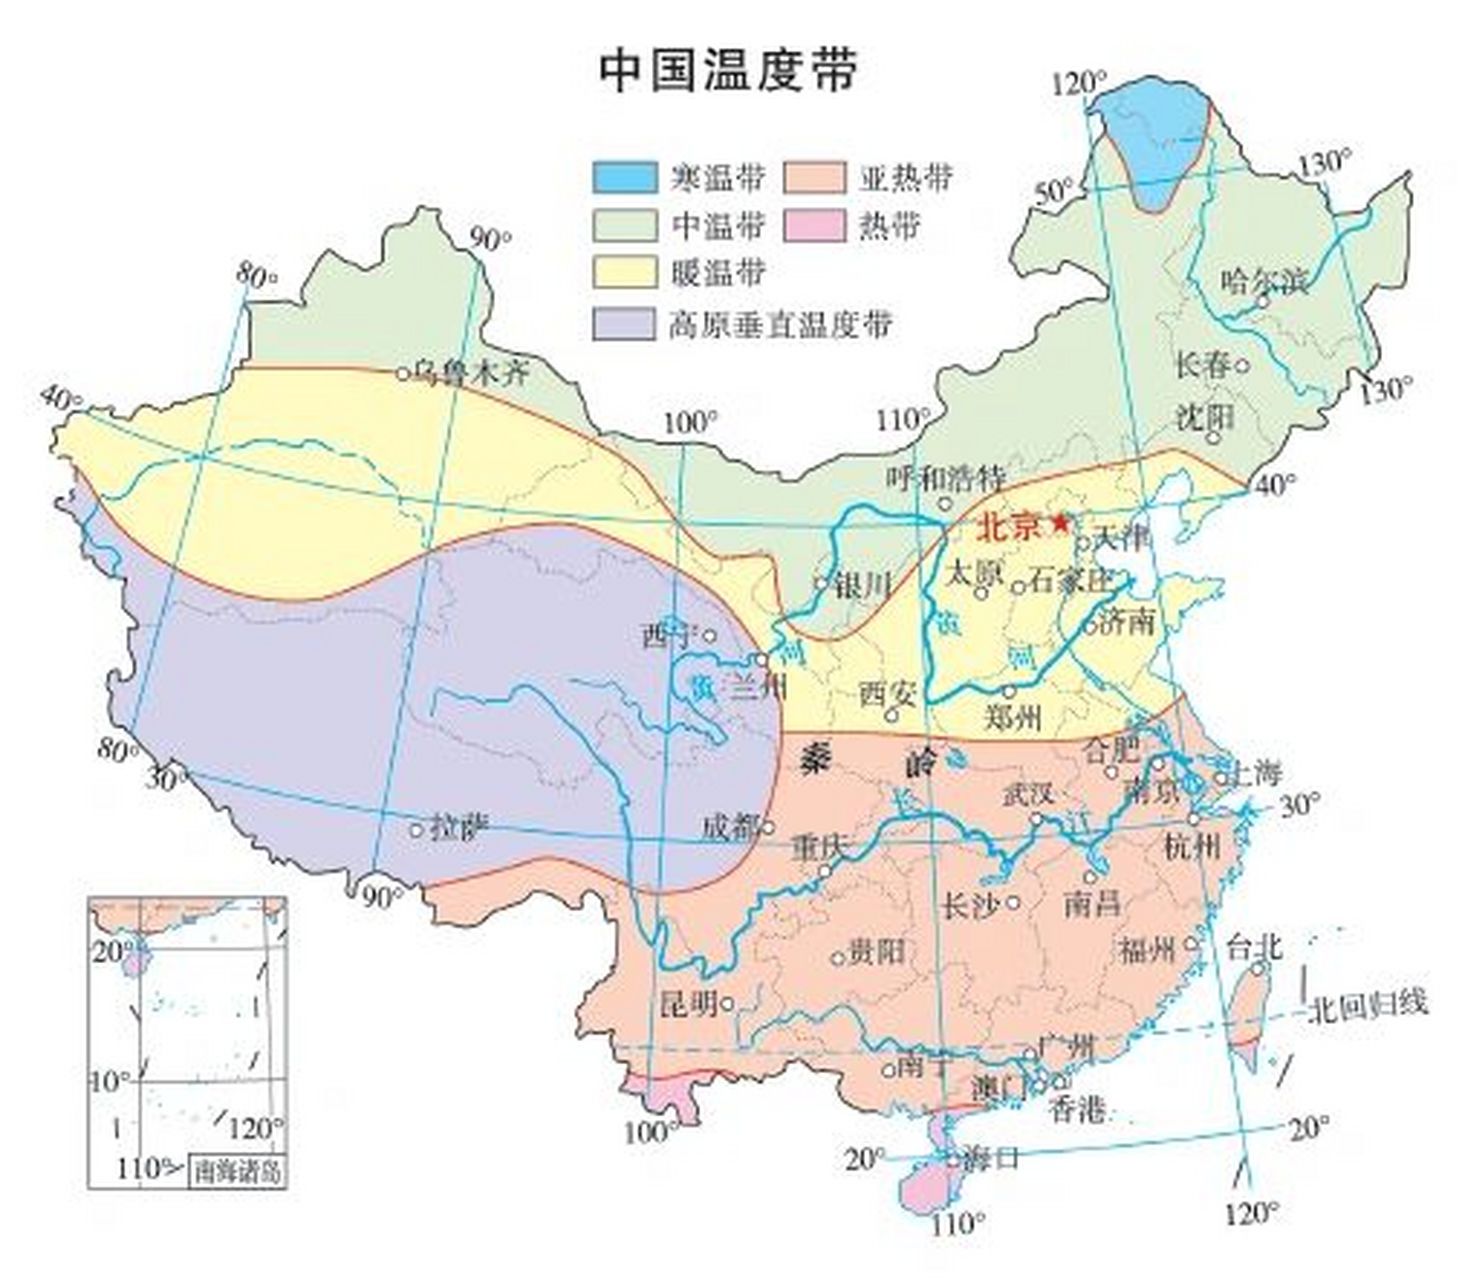 中国温度带&最热月&最冷月温度图分享9015  图一很重要哦6015